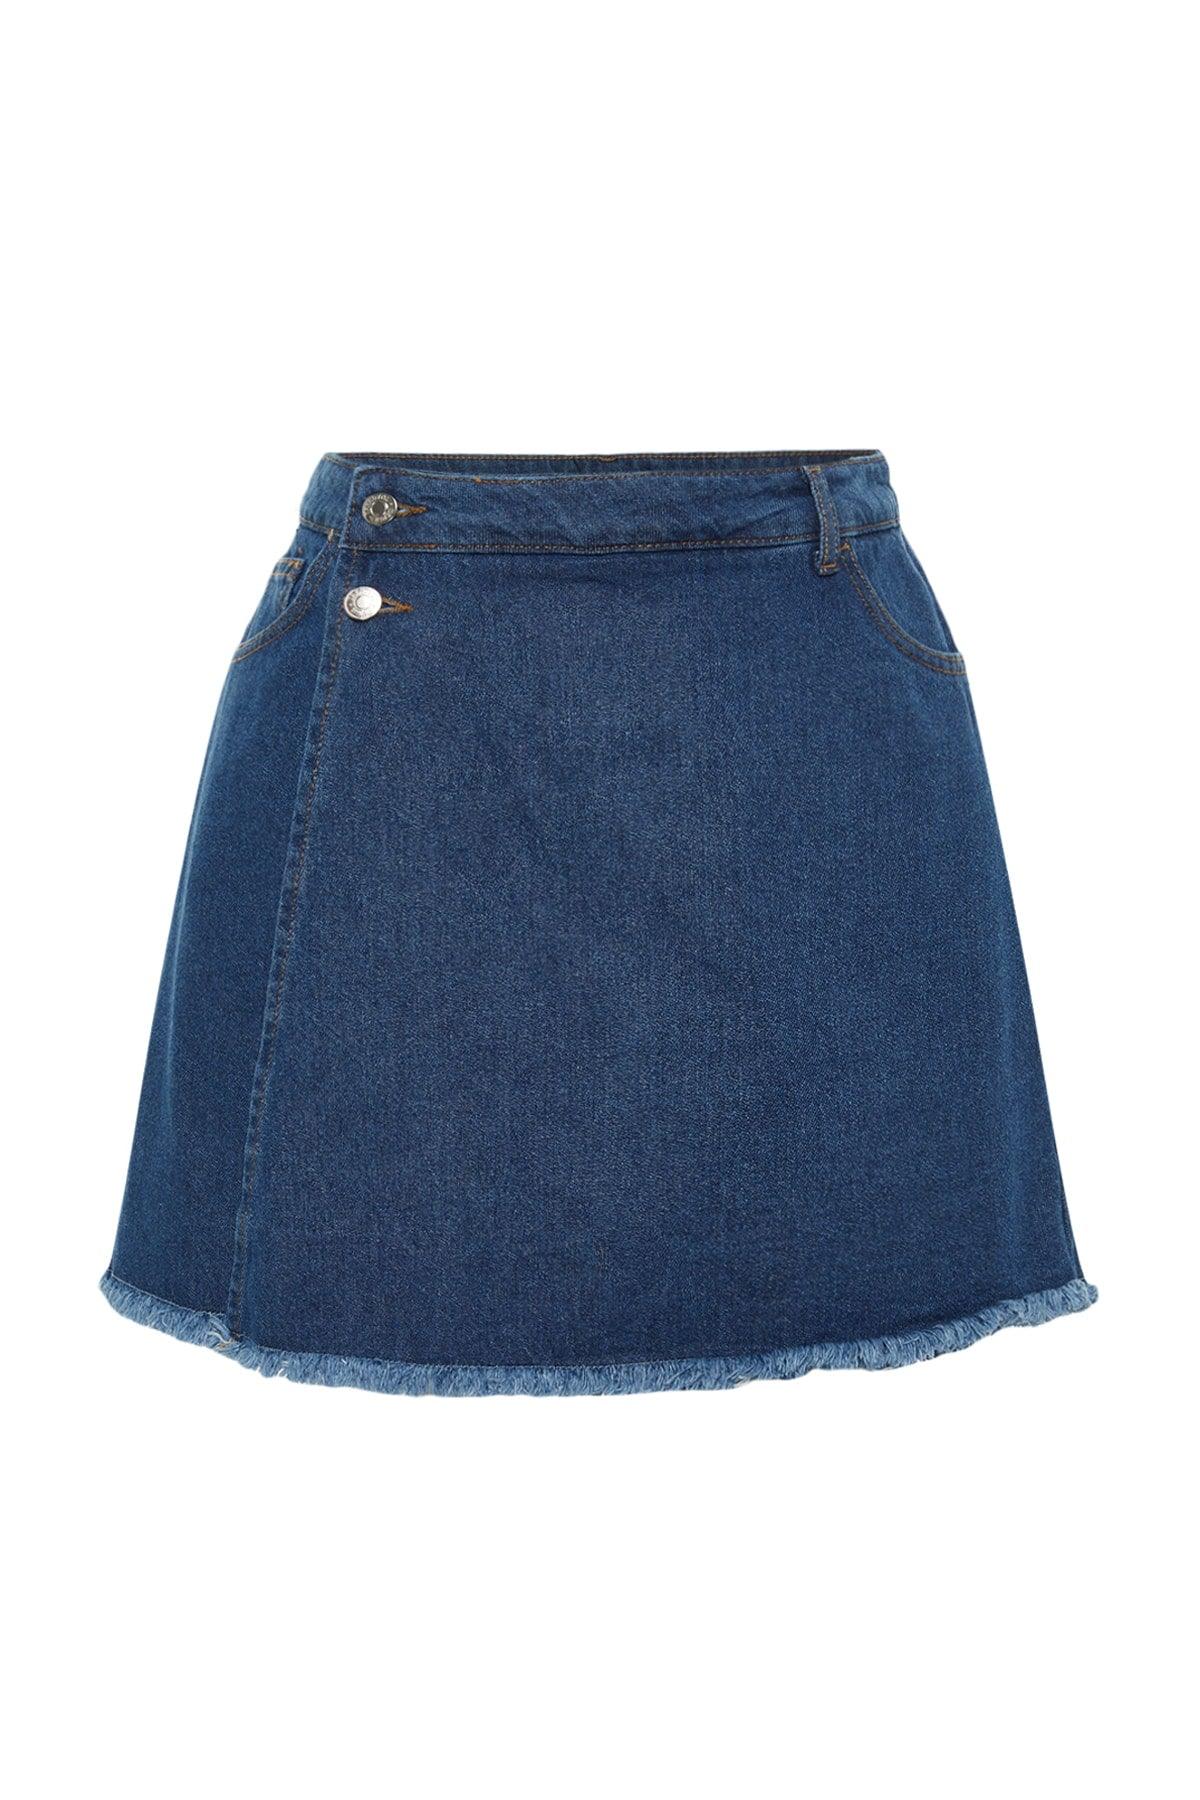 Light Blue High Waist Skirt Tasseled Shorts Skirt TBBSS23AP00008 - Swordslife